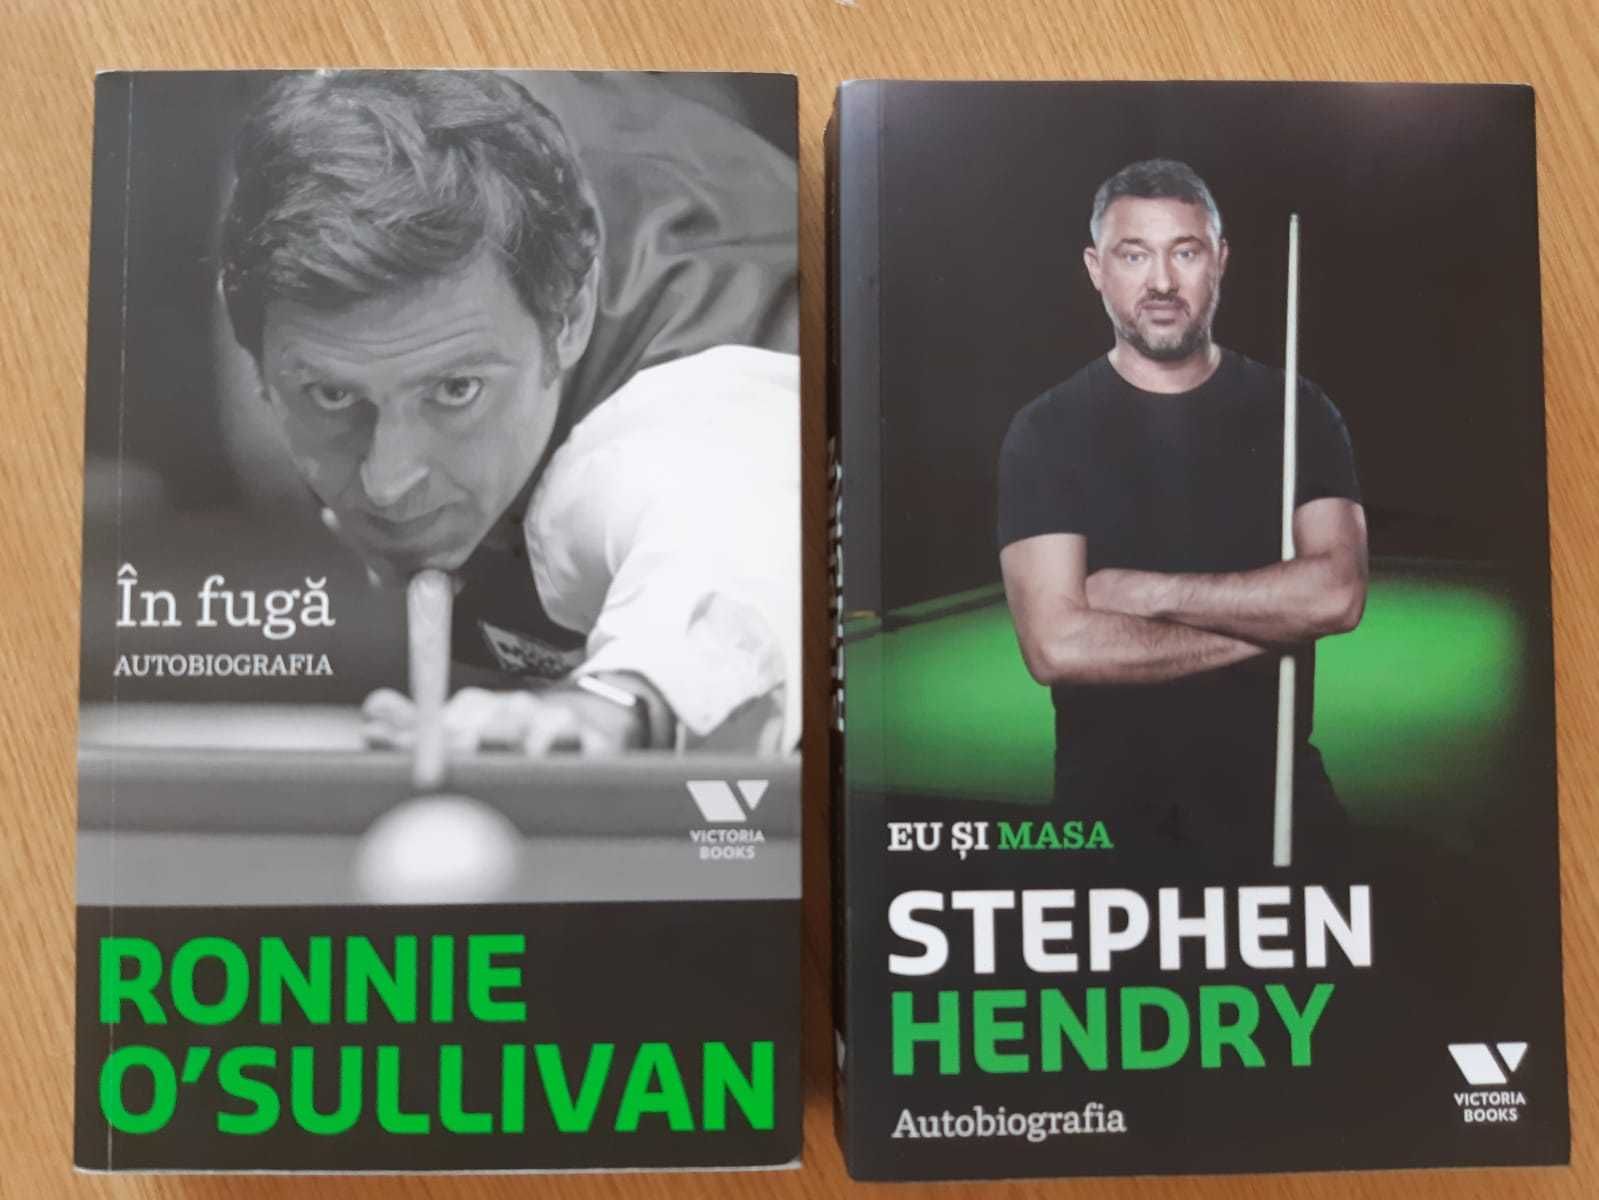 autobiografii Ronnie O'Sullivan si Stephen Hendry